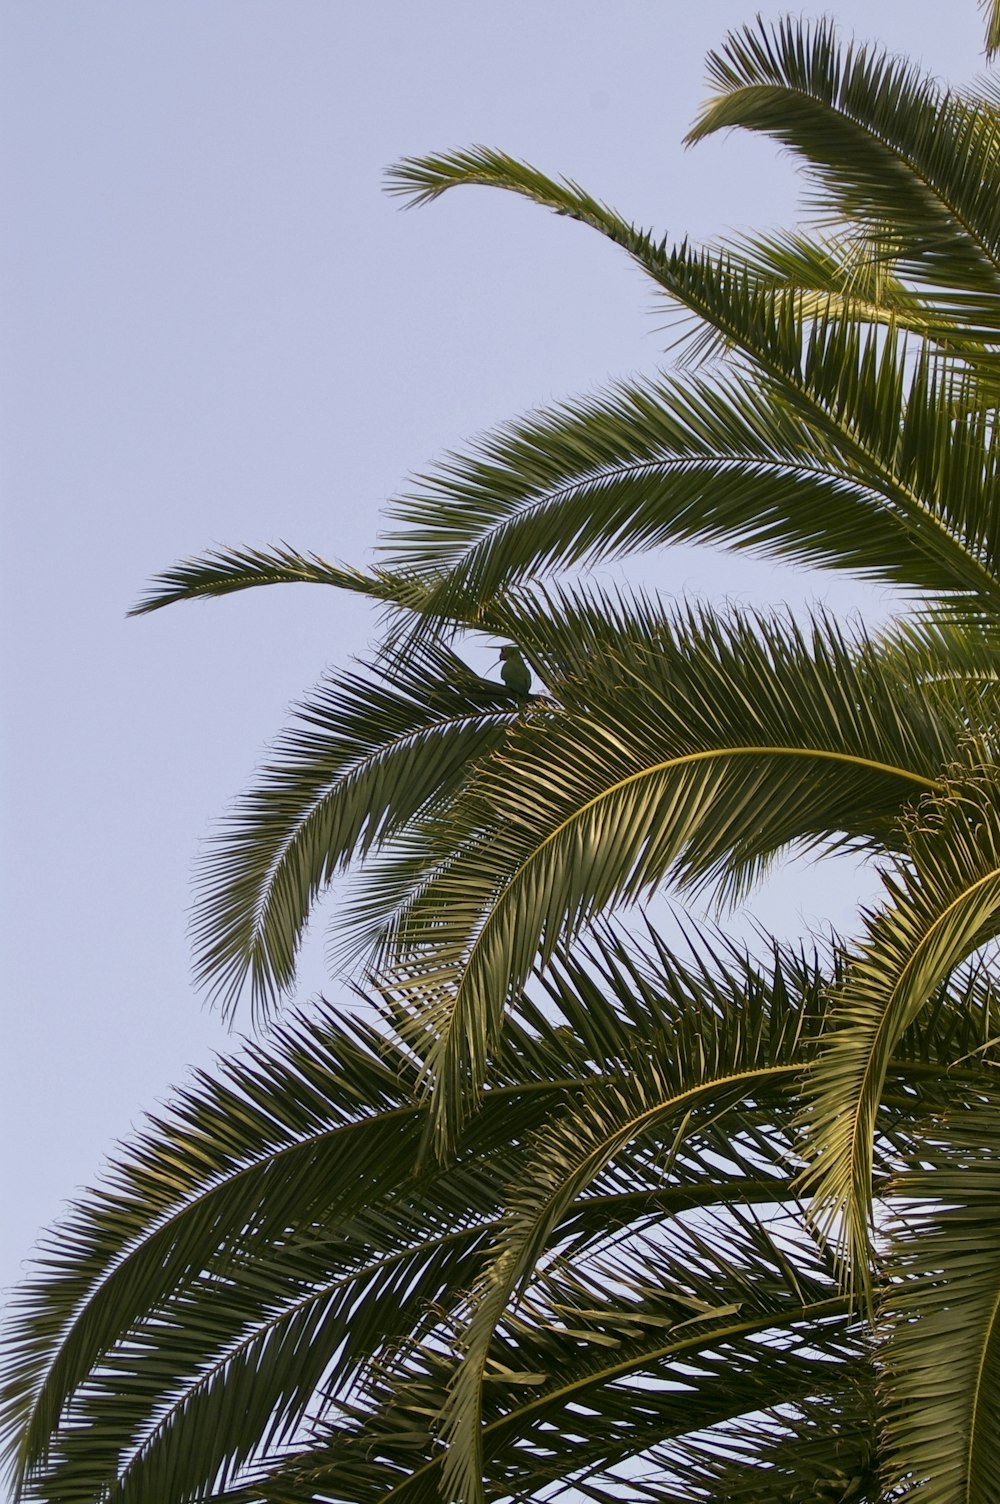 a palm tree with blue sky